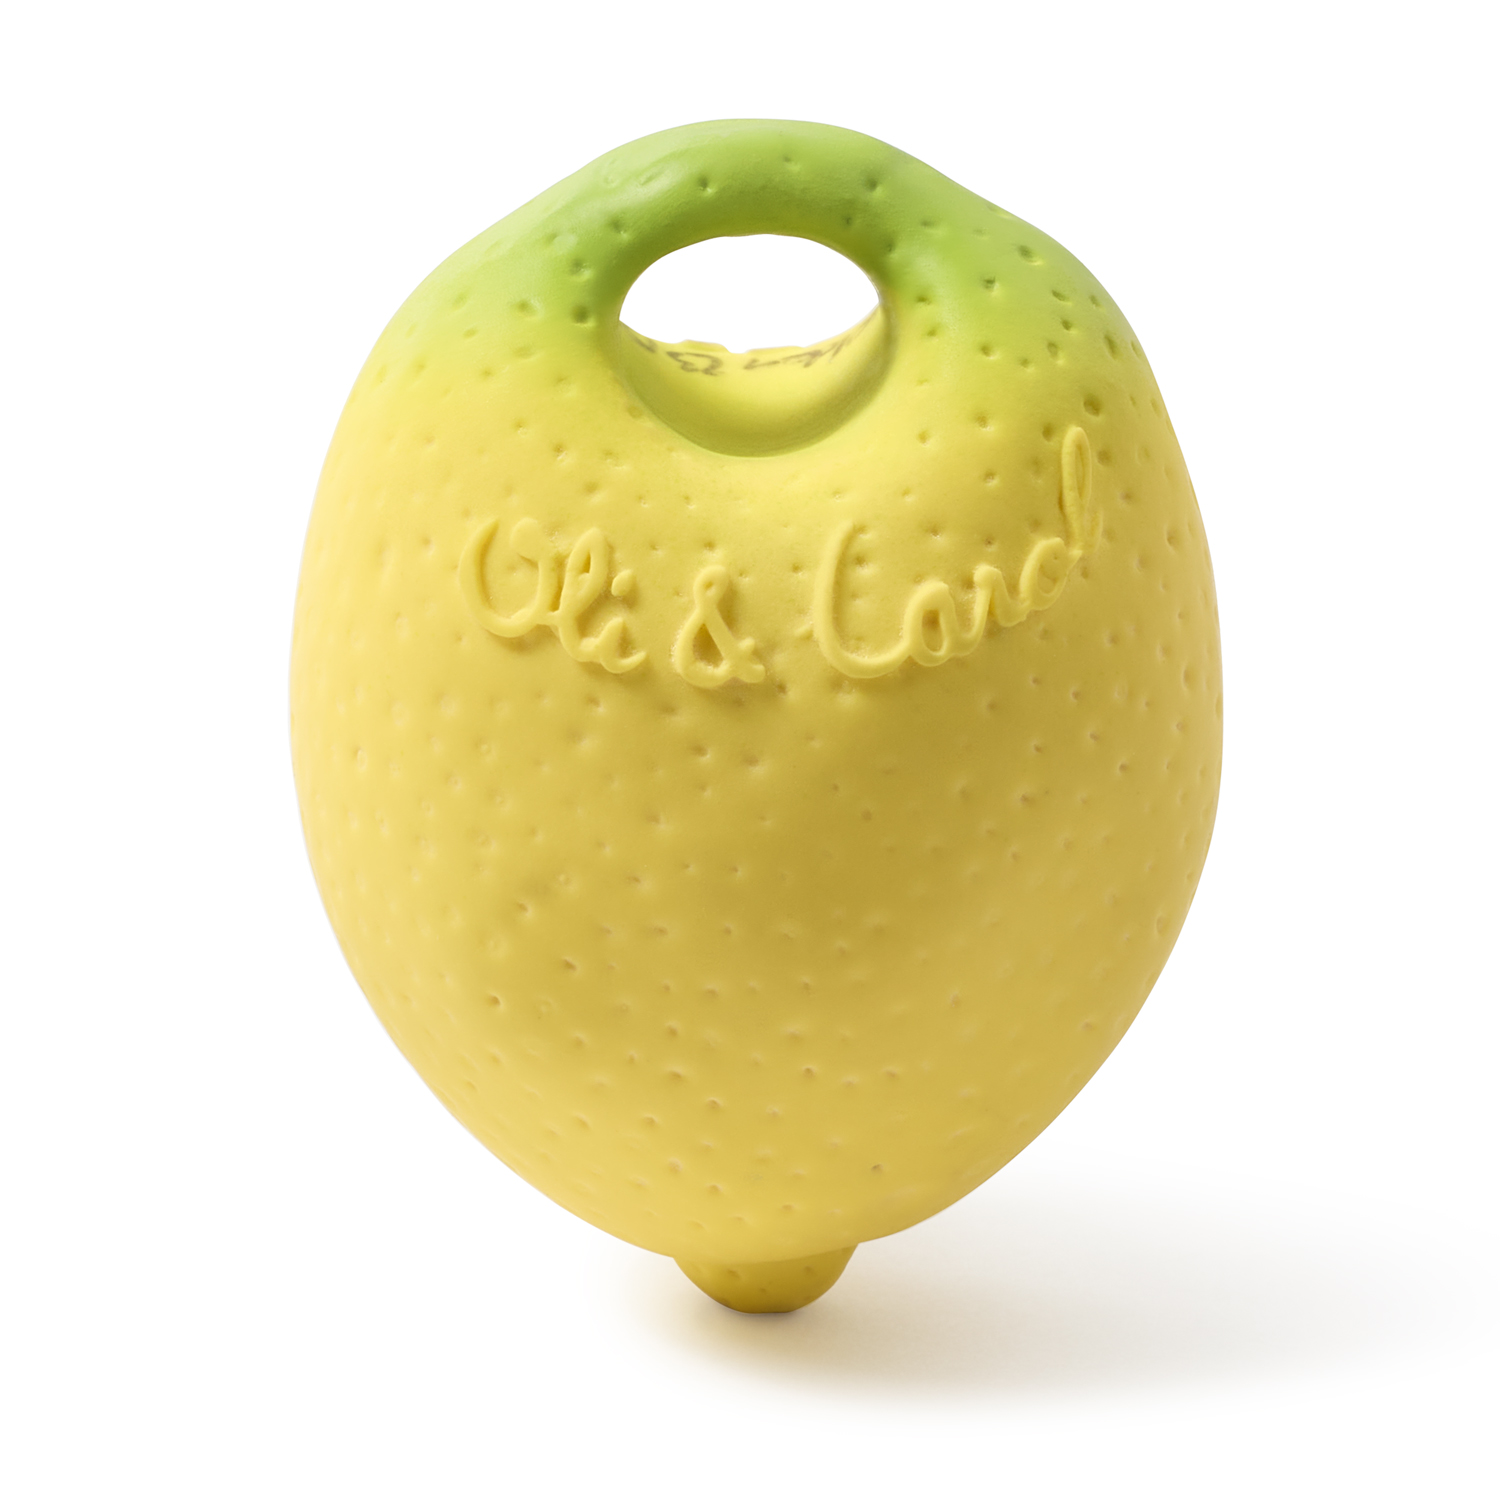 Прорезыватель комфортер OLI and CAROL MINI DOUDOU teether jahn lemon из натурального каучука - фото 6